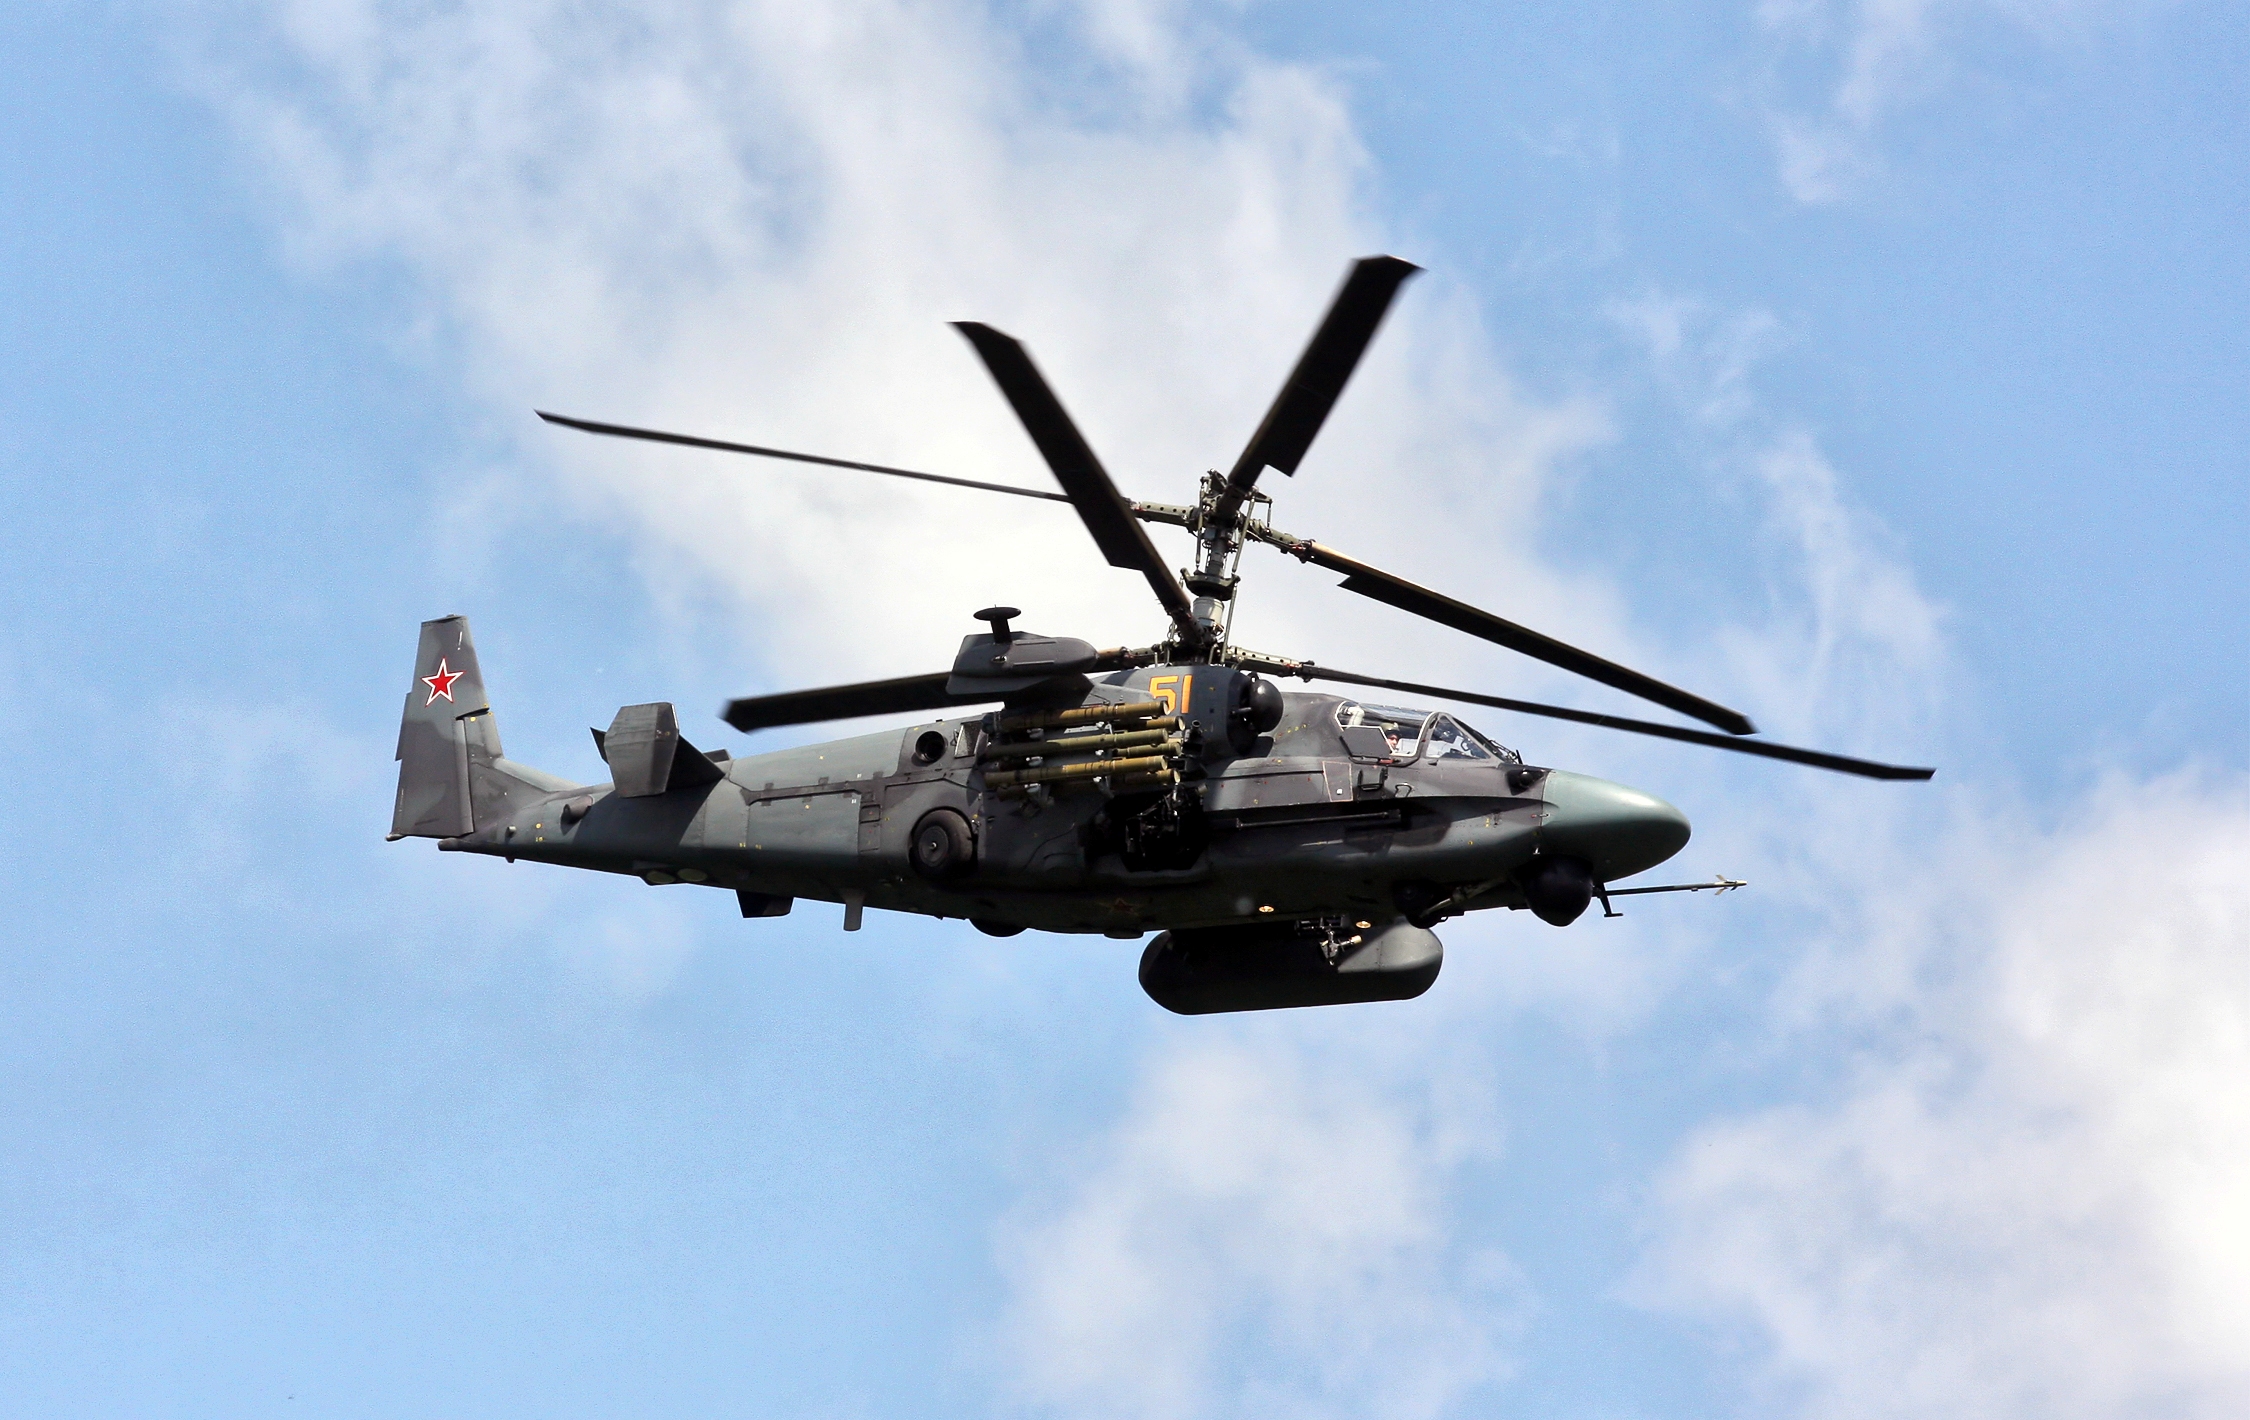 AFU visade hur de sköt ner en rysk Ka-52 Alligator attackhelikopter med hjälp av RBS 70 bärbara luftvärnssystem